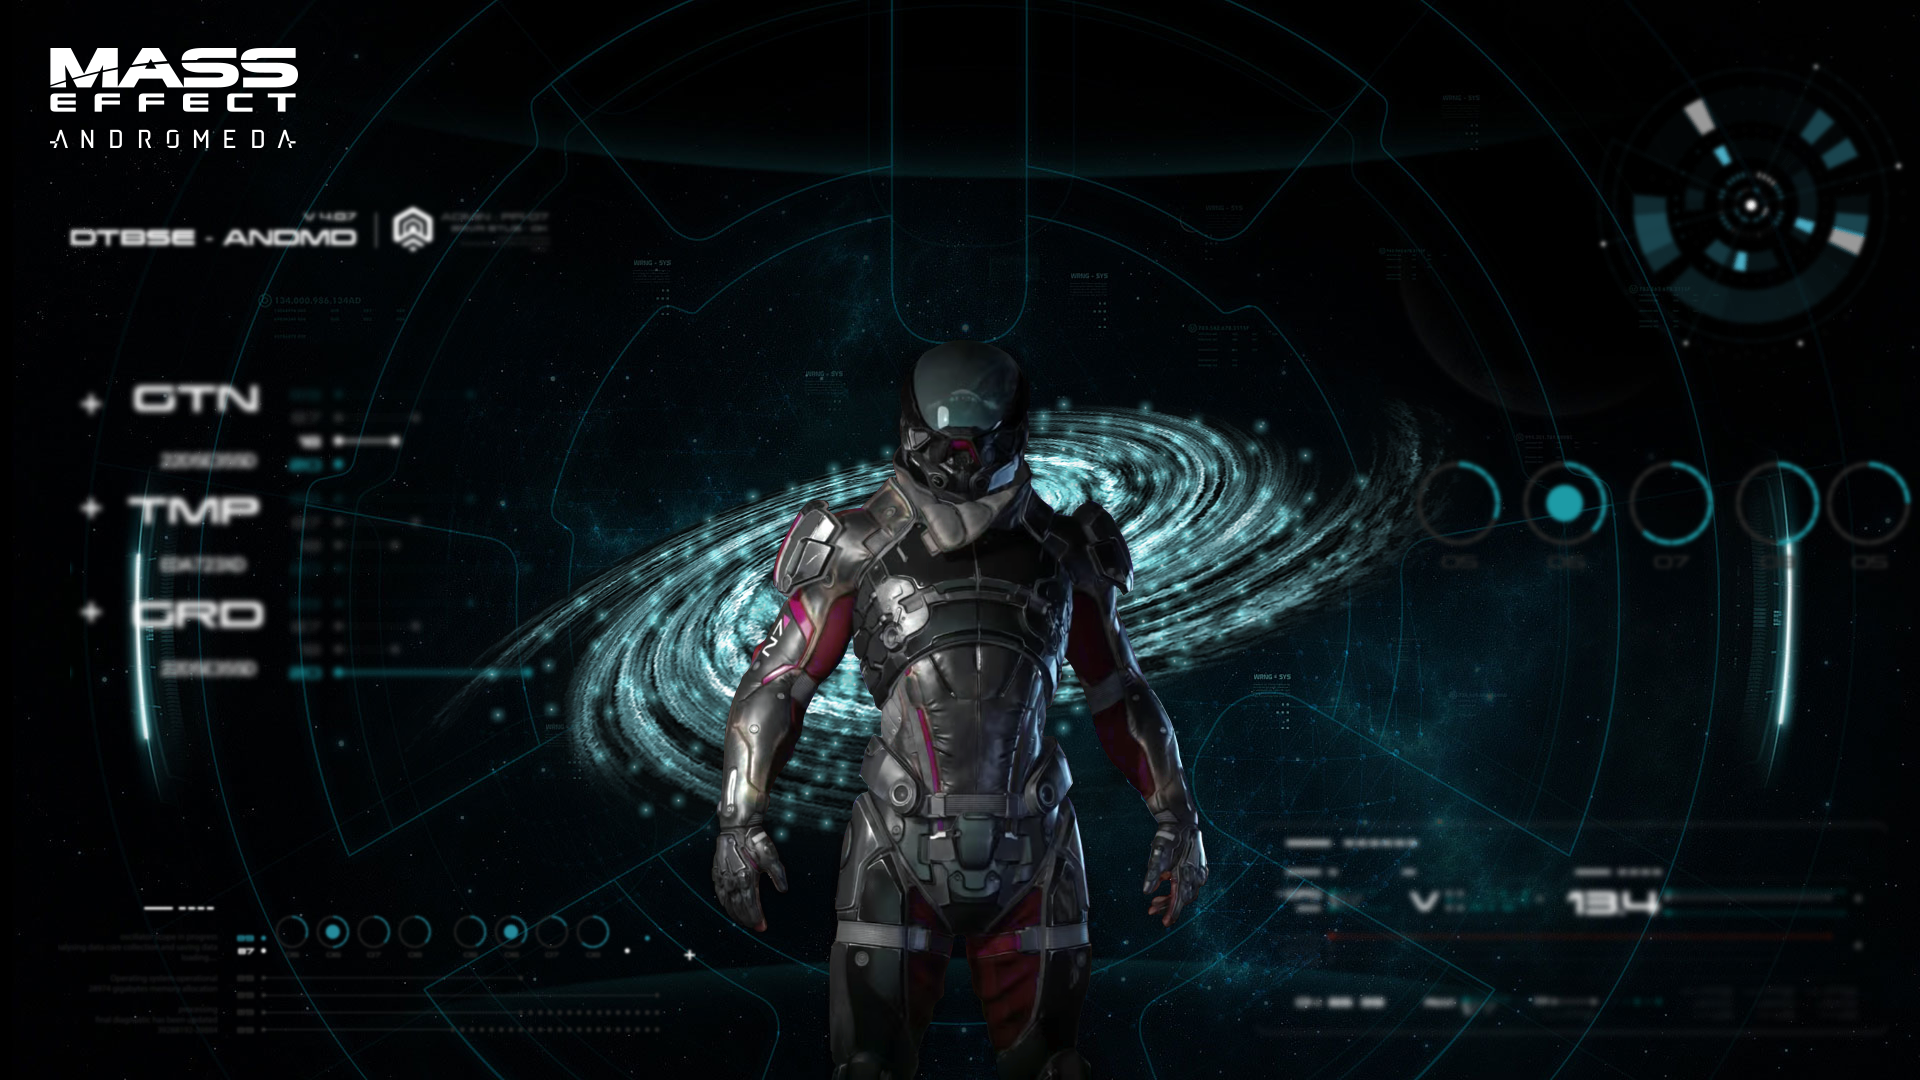 Hyperion Fall  Mass Effect Andromeda Wallpaper 4K by RedLineR91 on  DeviantArt